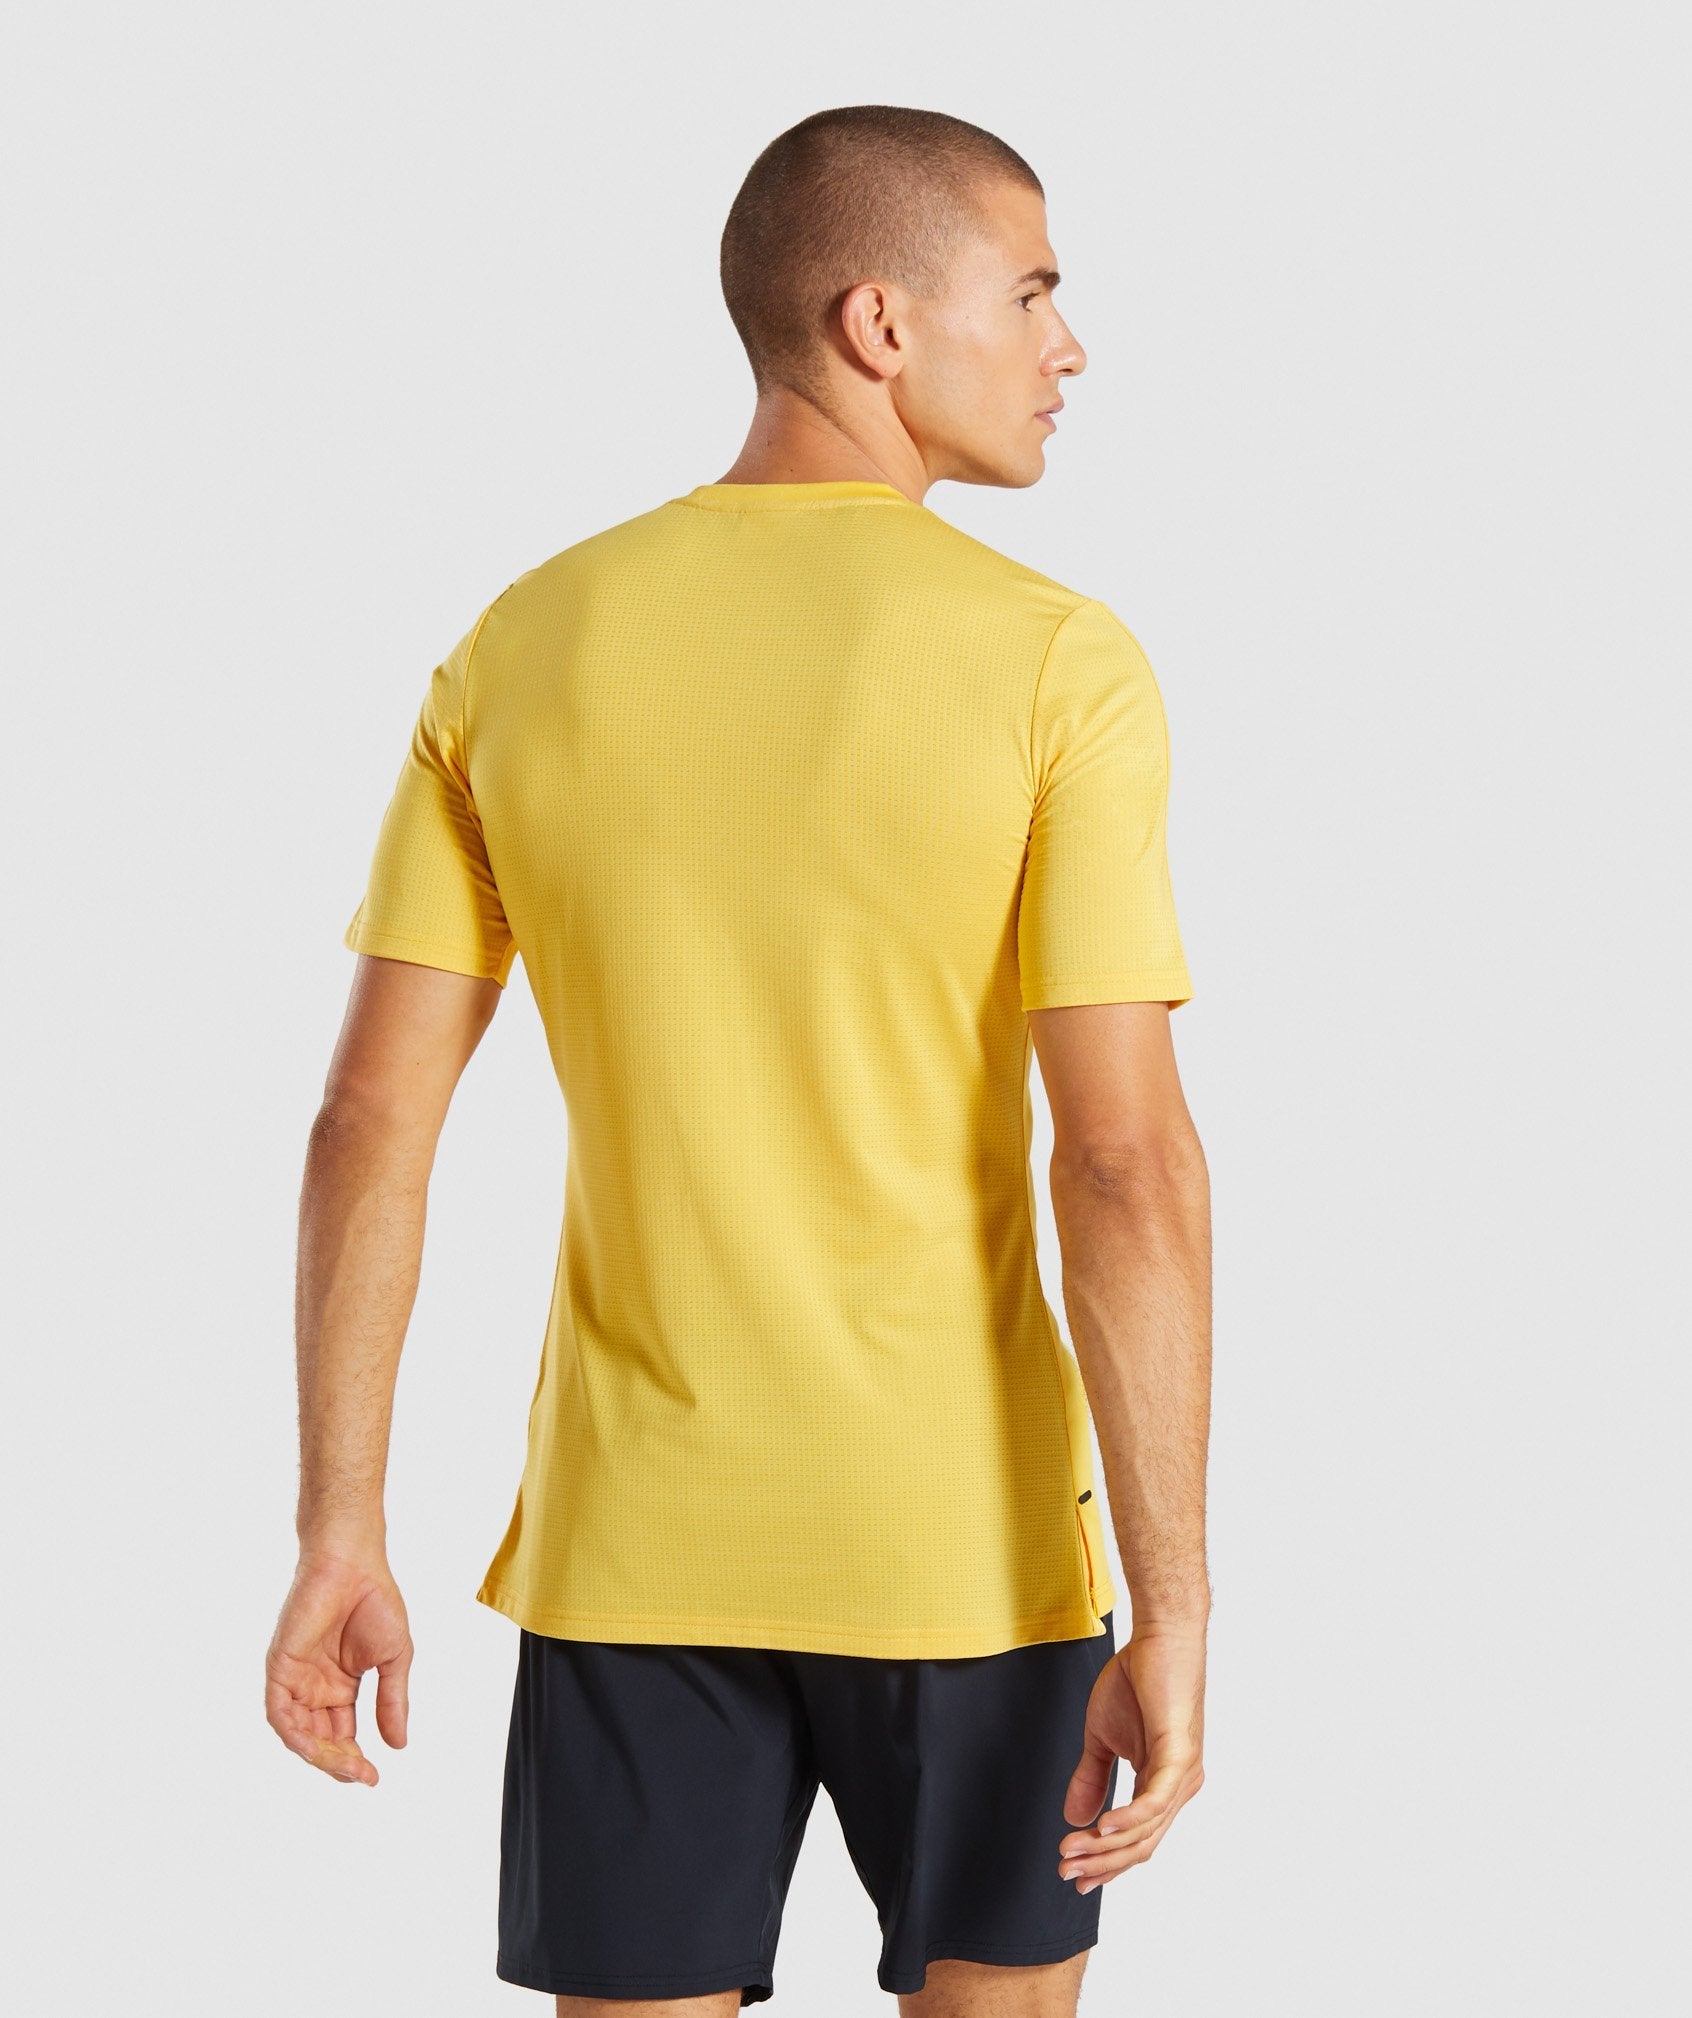 Raid T-Shirt in Yellow - view 2